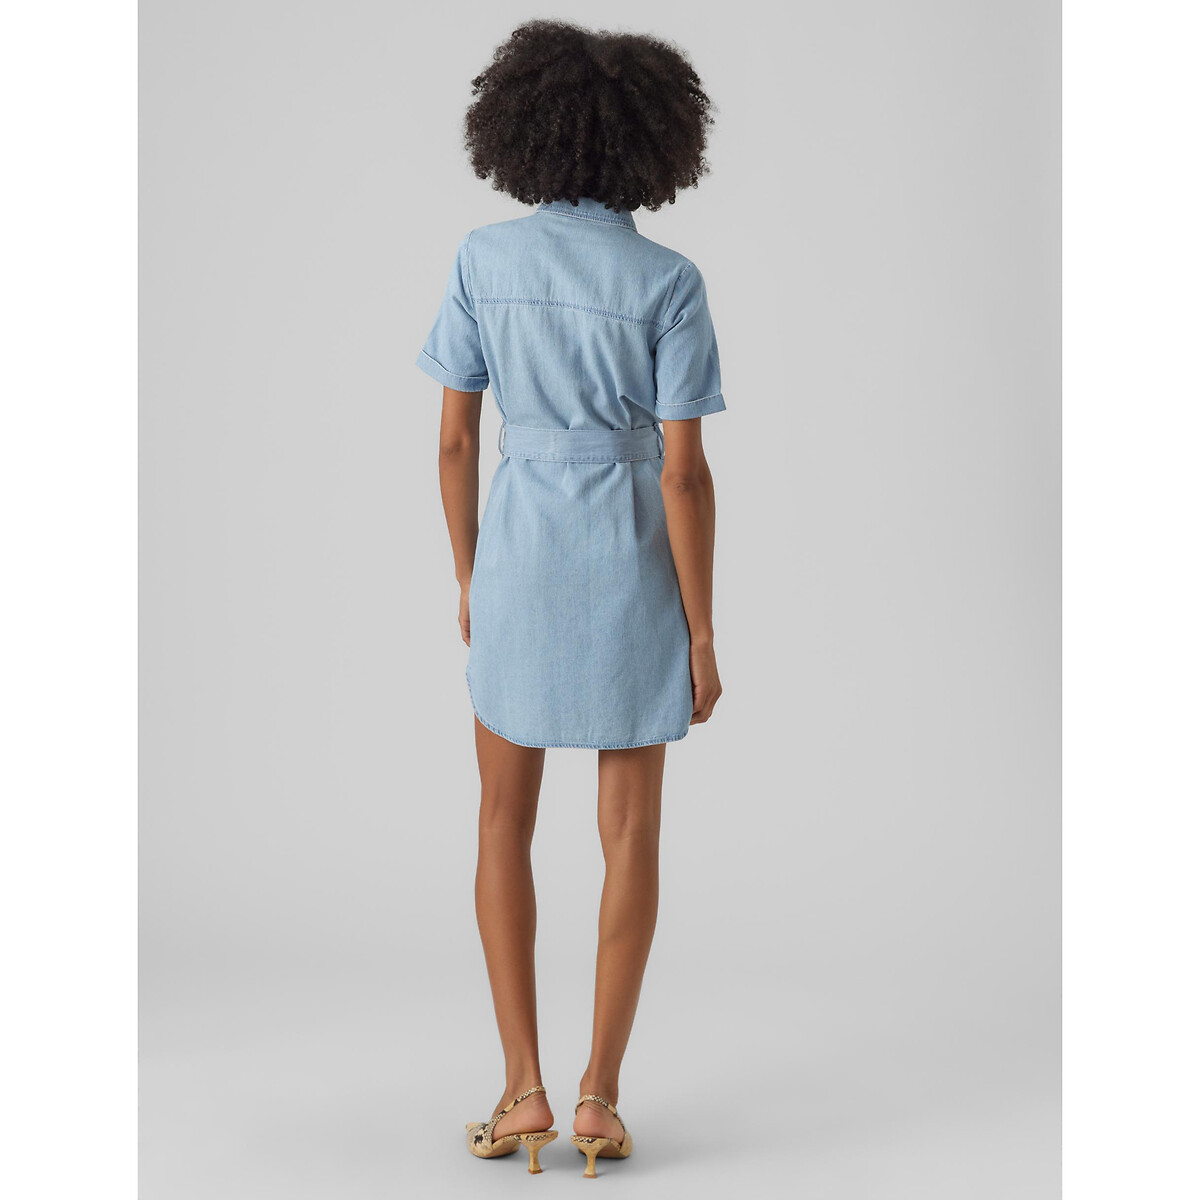 Платье-рубашка Прямое с поясом S синий LaRedoute, размер S - фото 4